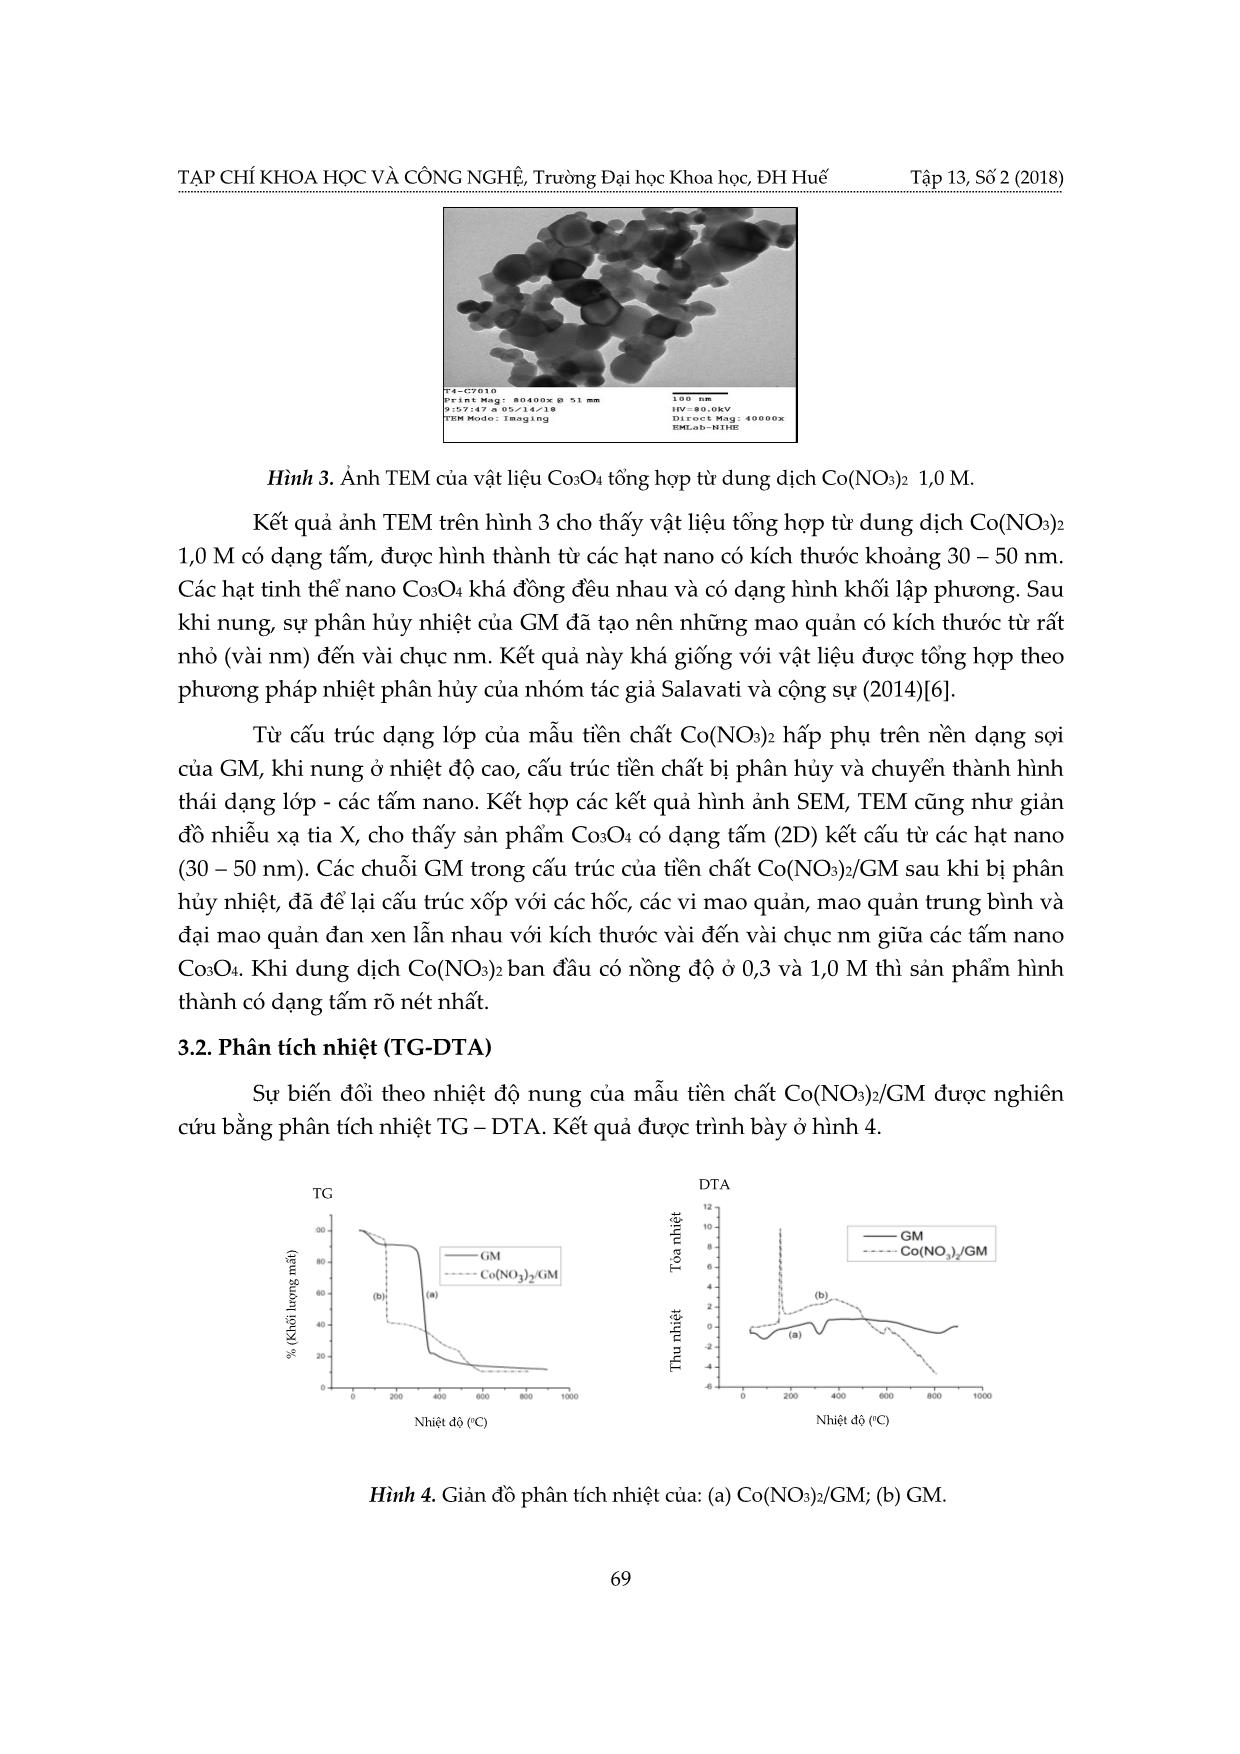 Nghiên cứu ảnh hưởng của nồng độ dung dịch CO(NO₃)₂ đến hình thái, cấu trúc của vật liệu nano CO₃O₄ được tổng hợp bằng phương pháp khuôn mềm trang 5